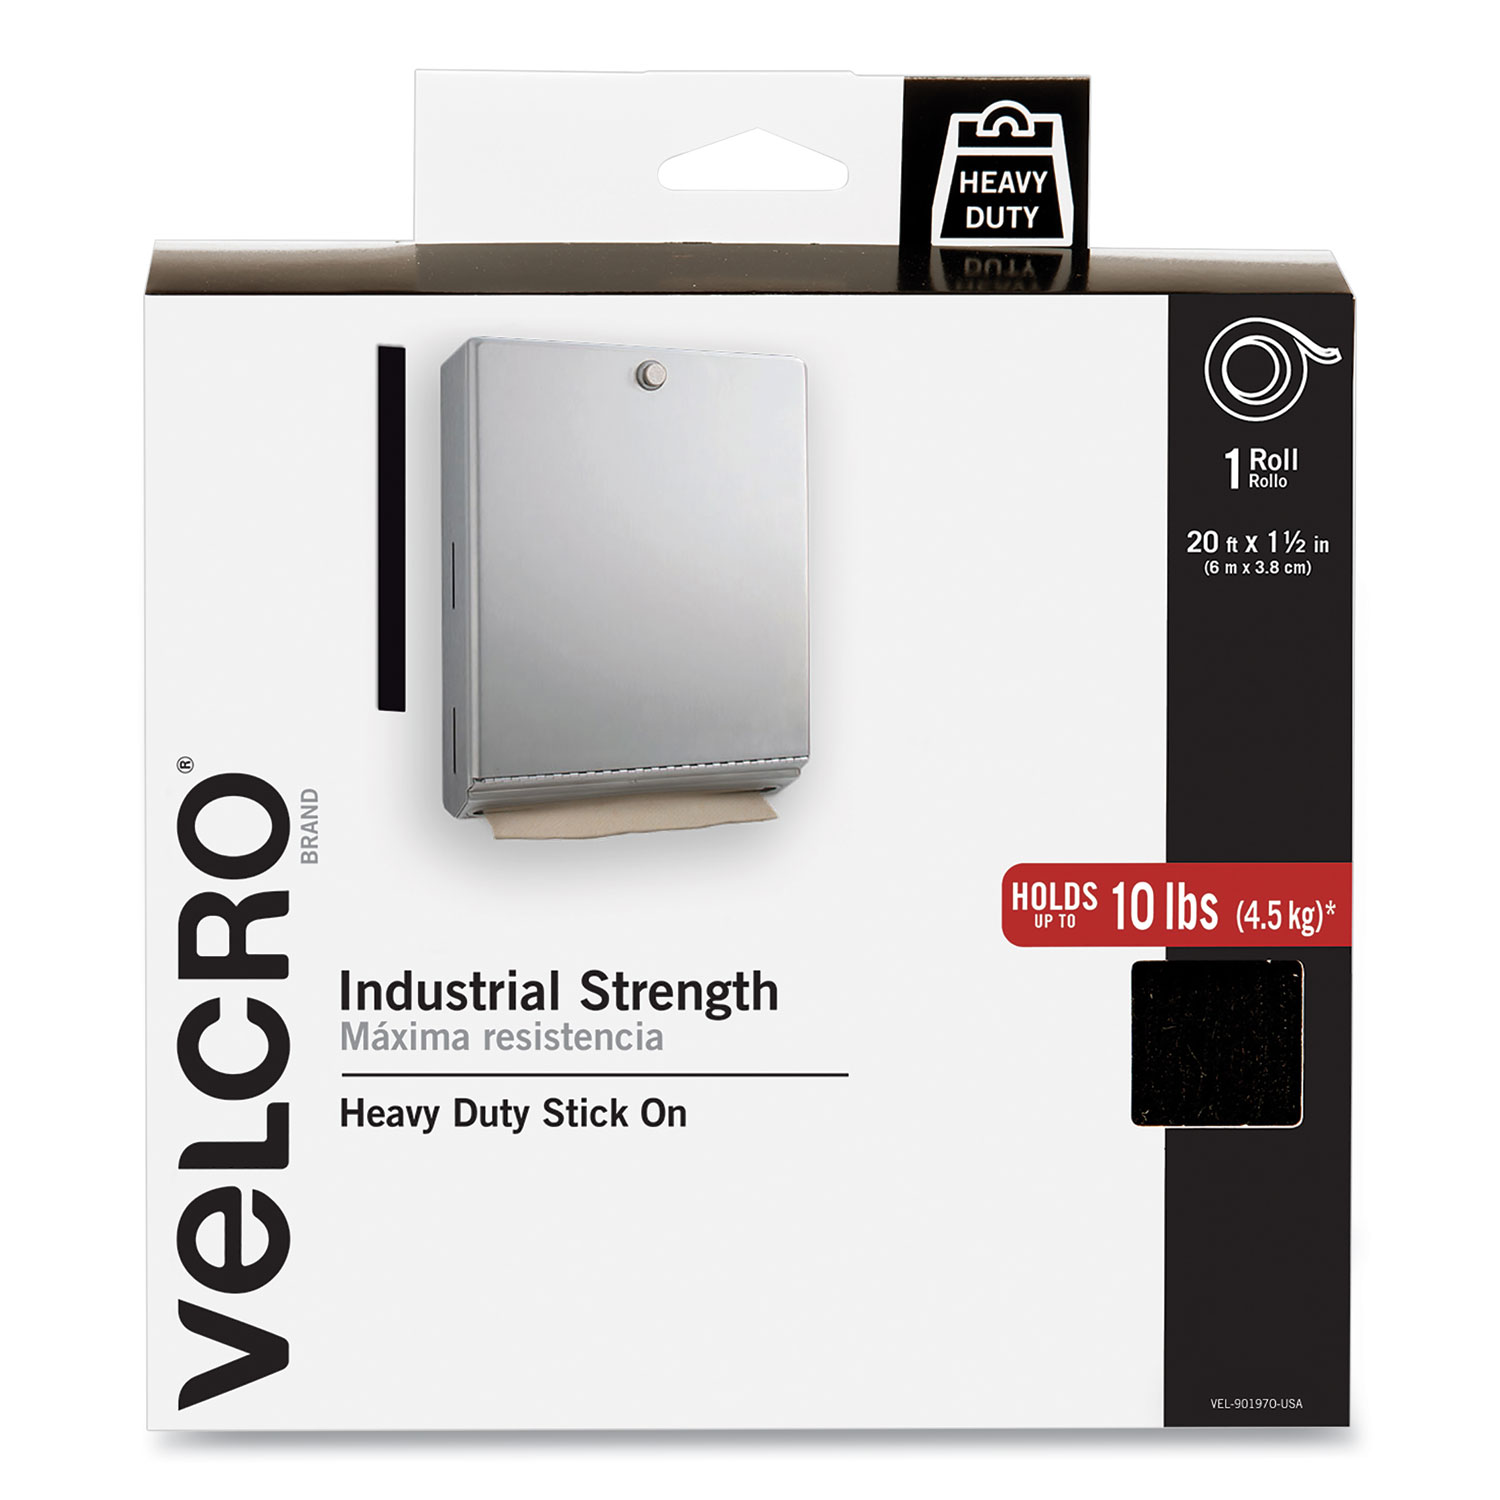 VELCRO Brand Industrial Strength Tape, 15ft x 2in Roll, Black - VEK90197 